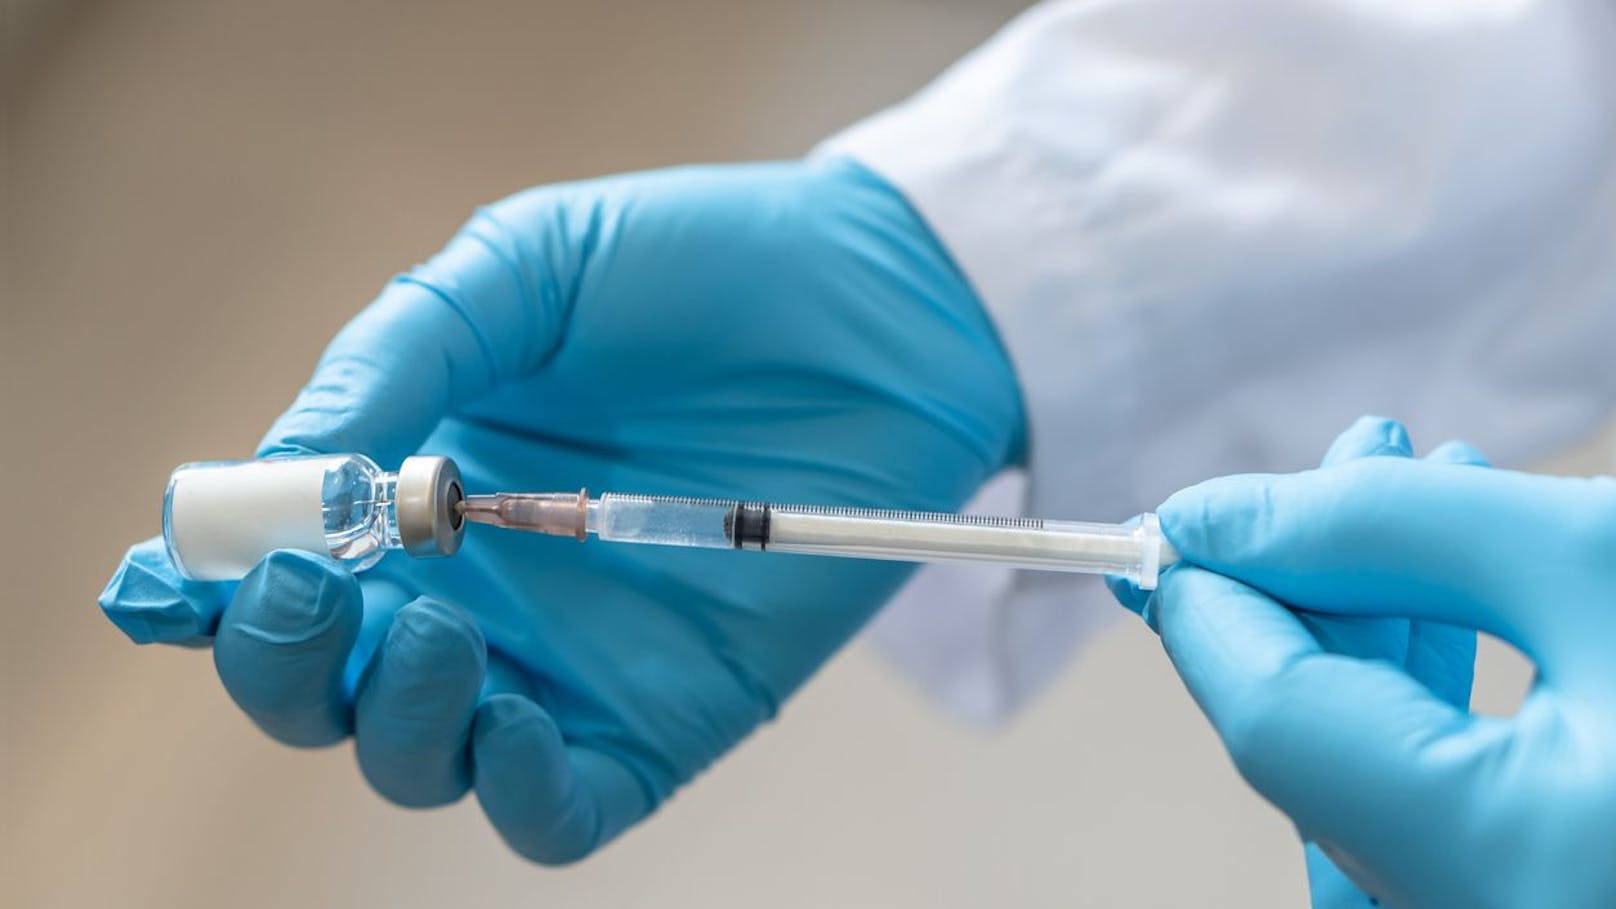 129 Personen mit Kochsalz "geimpft" – Arzt verurteilt